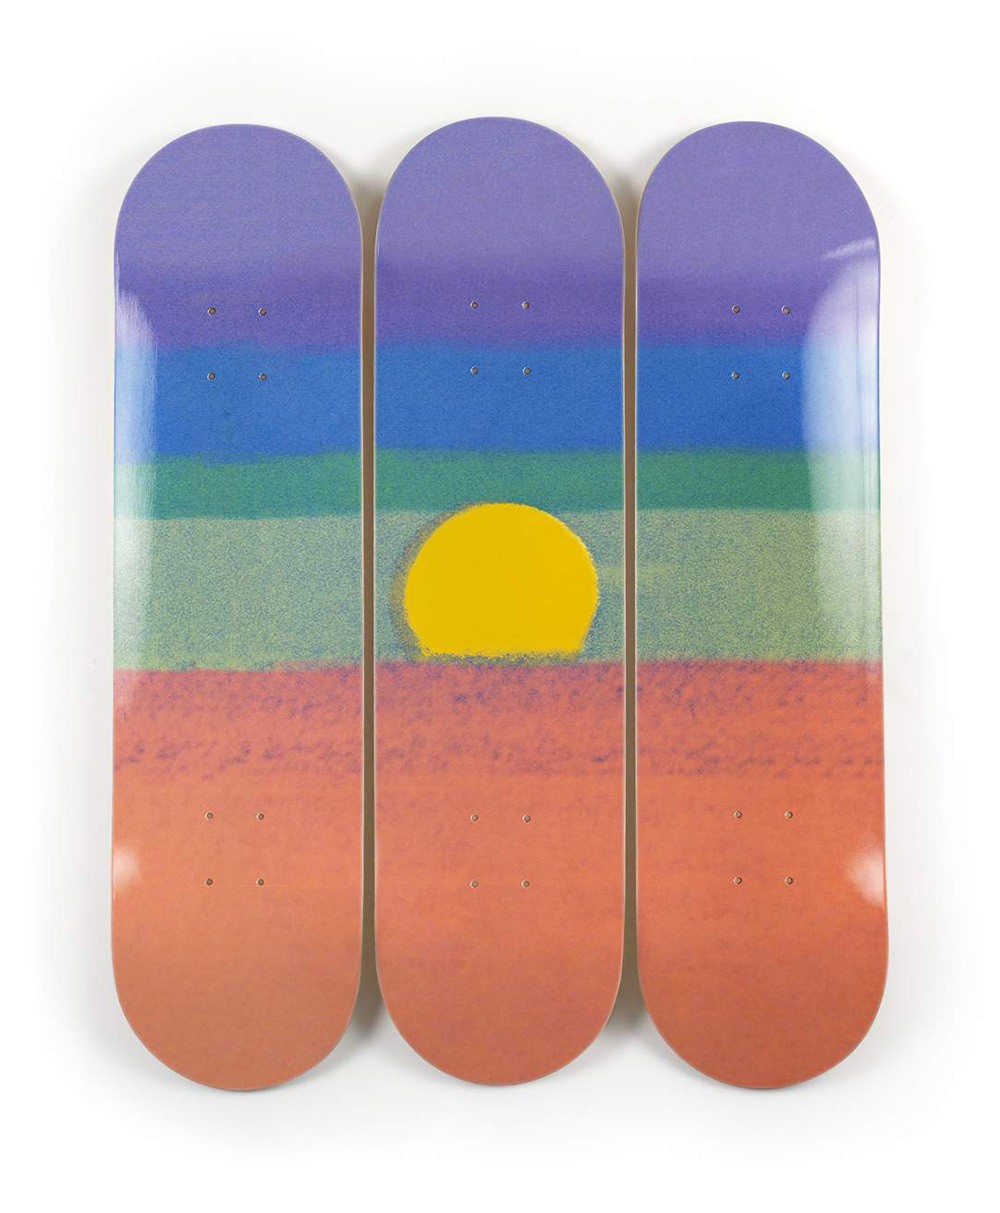 Produktbild "Sunset orange" designed by Andy Warhol von The Skateroom im RAUM Conceptstore